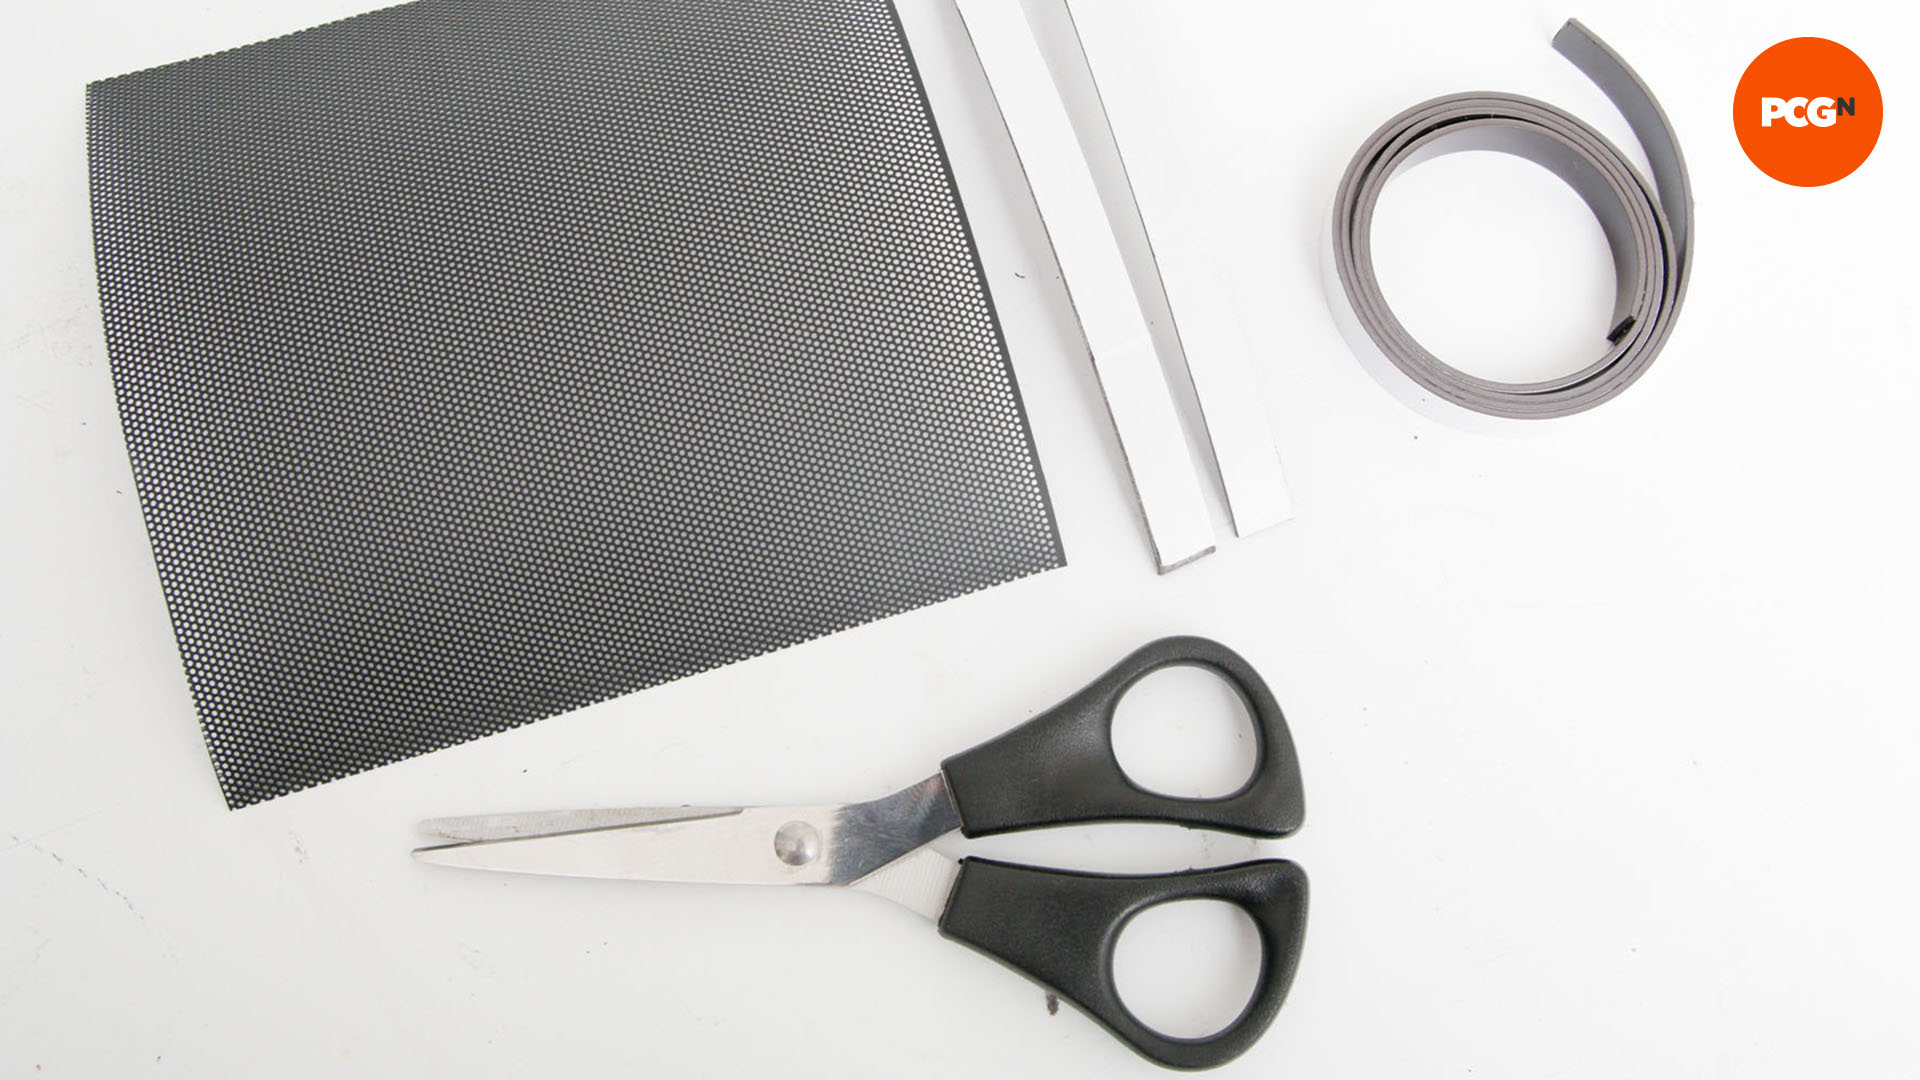 Comment empêcher la poussière de pénétrer dans votre PC : coupez les bandes magnétiques à la bonne taille